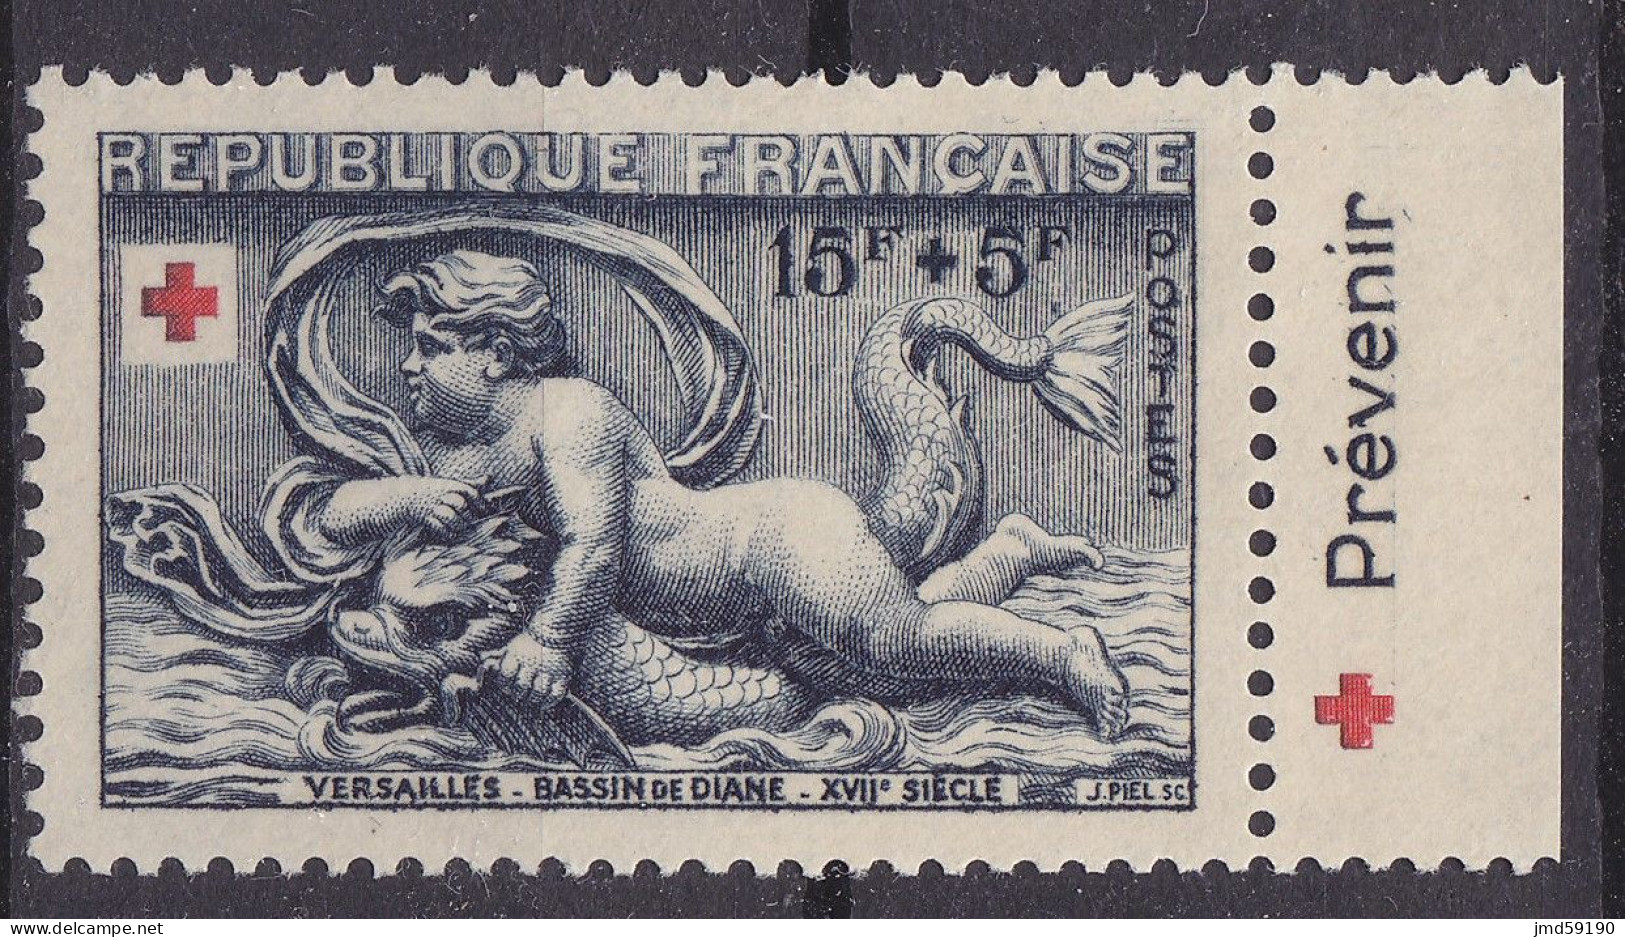 Timbre Neuf* NSG 938a Avec Bandelette Publicitaire PREVENIR, Issu Du Carnet Croix Rouge De 1952 - Nuovi